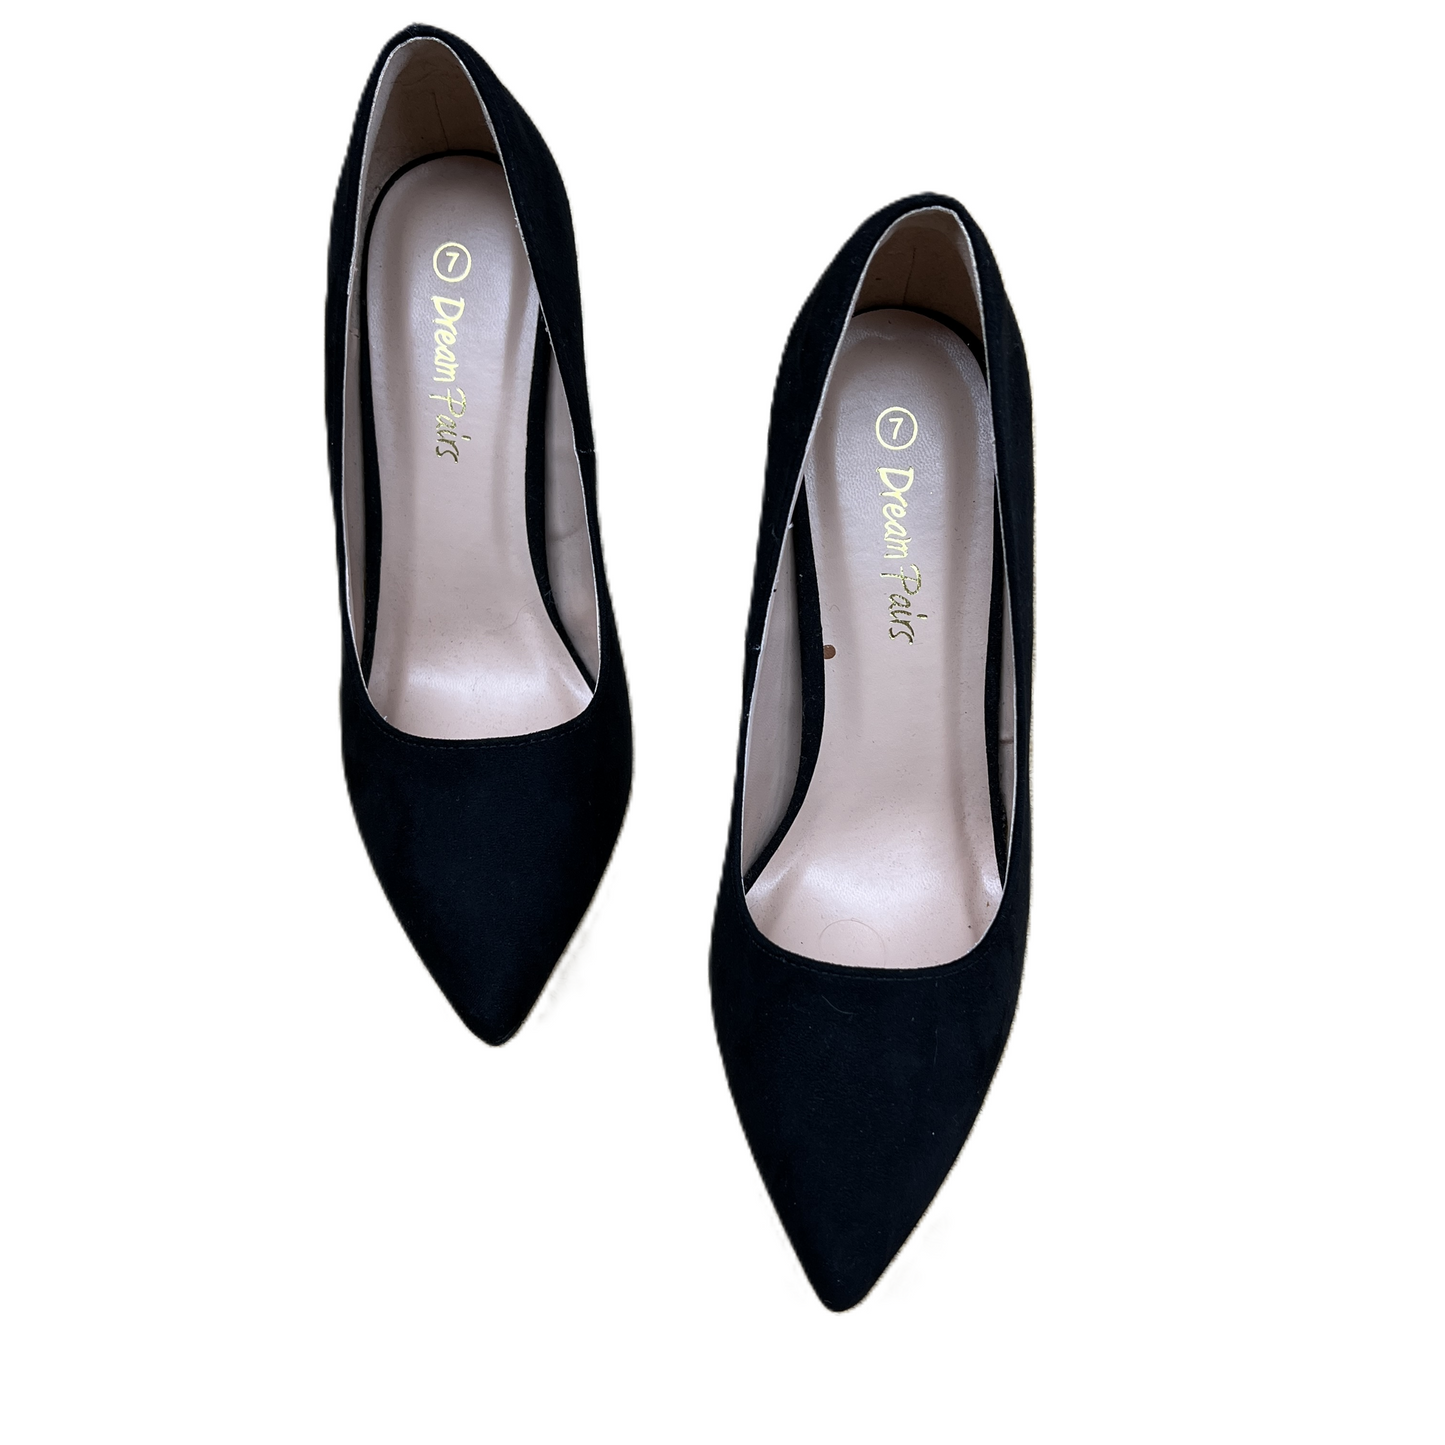 Shoes Heels Stiletto By Dream Paris  Size: 7